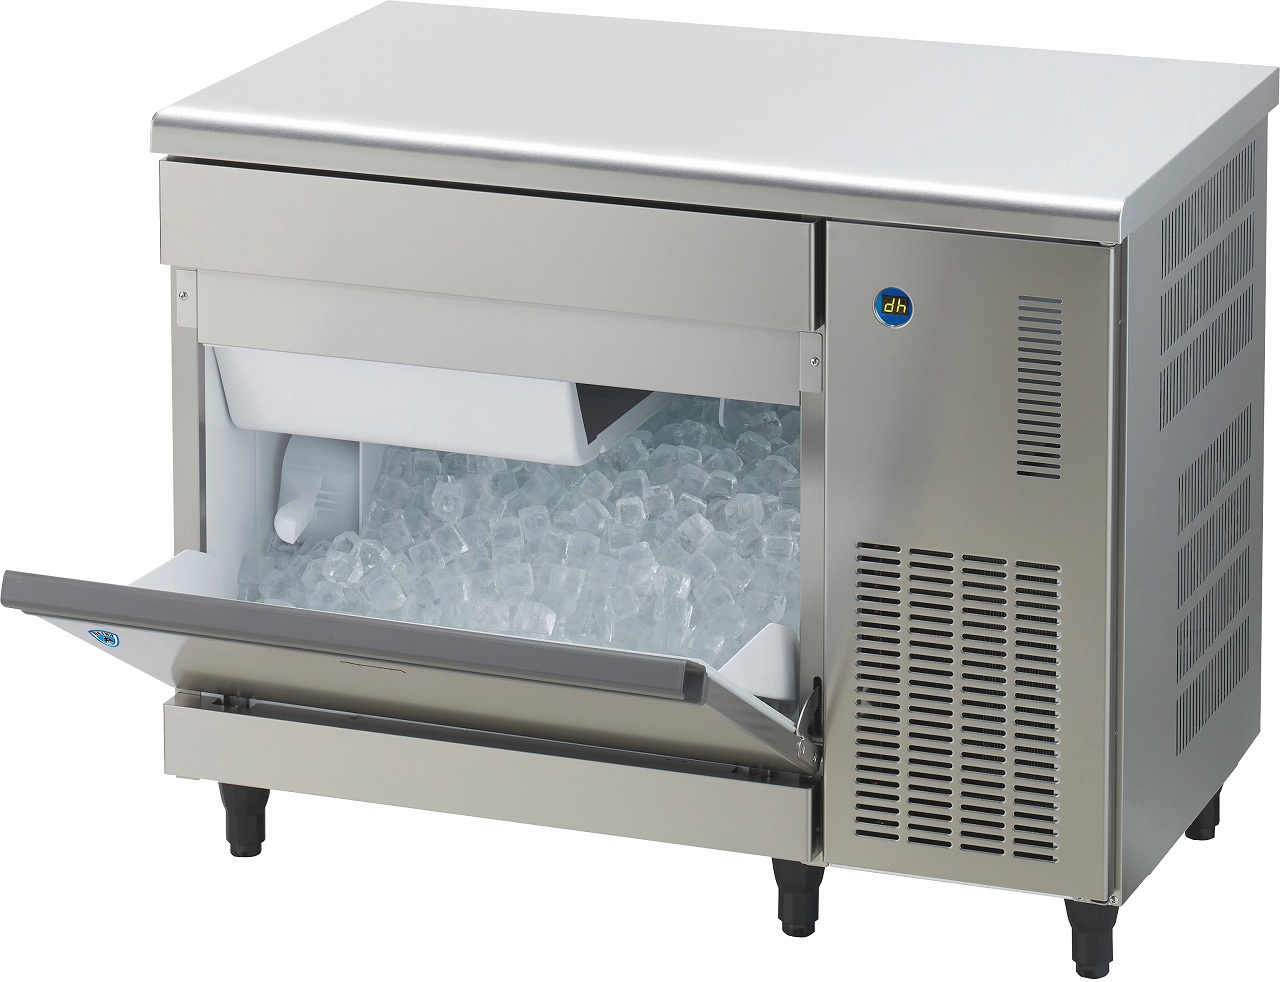 い出のひと時に、とびきりのおしゃれを！ 厨房機器販売クリーブランド製氷機 パナソニック SIM-AS240N-JB4 スタックオンタイプ 